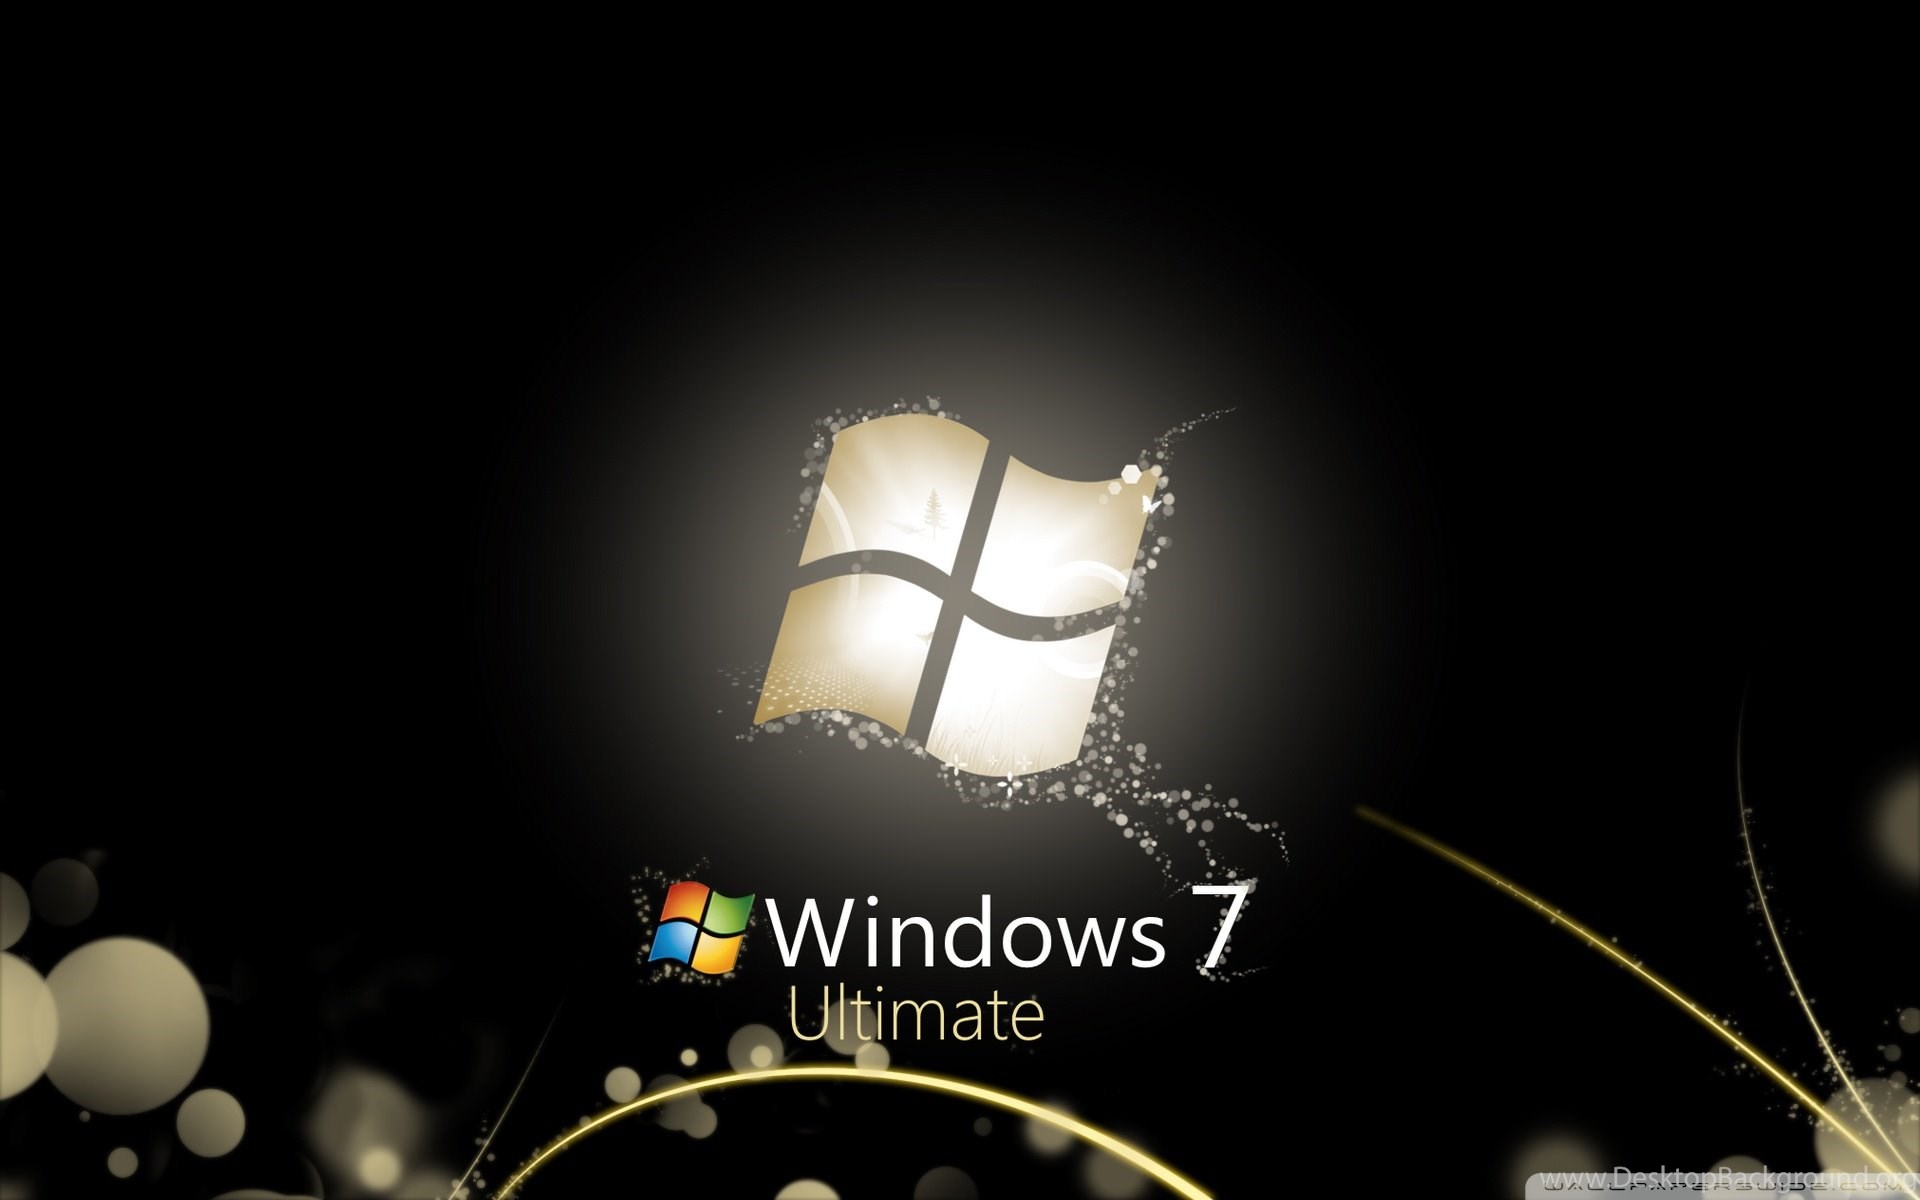 Компьютер на телефон виндовс 7. Виндовс 7. Заставка Windows 7. Windows 7 рабочий стол. Изображение виндовс 7.